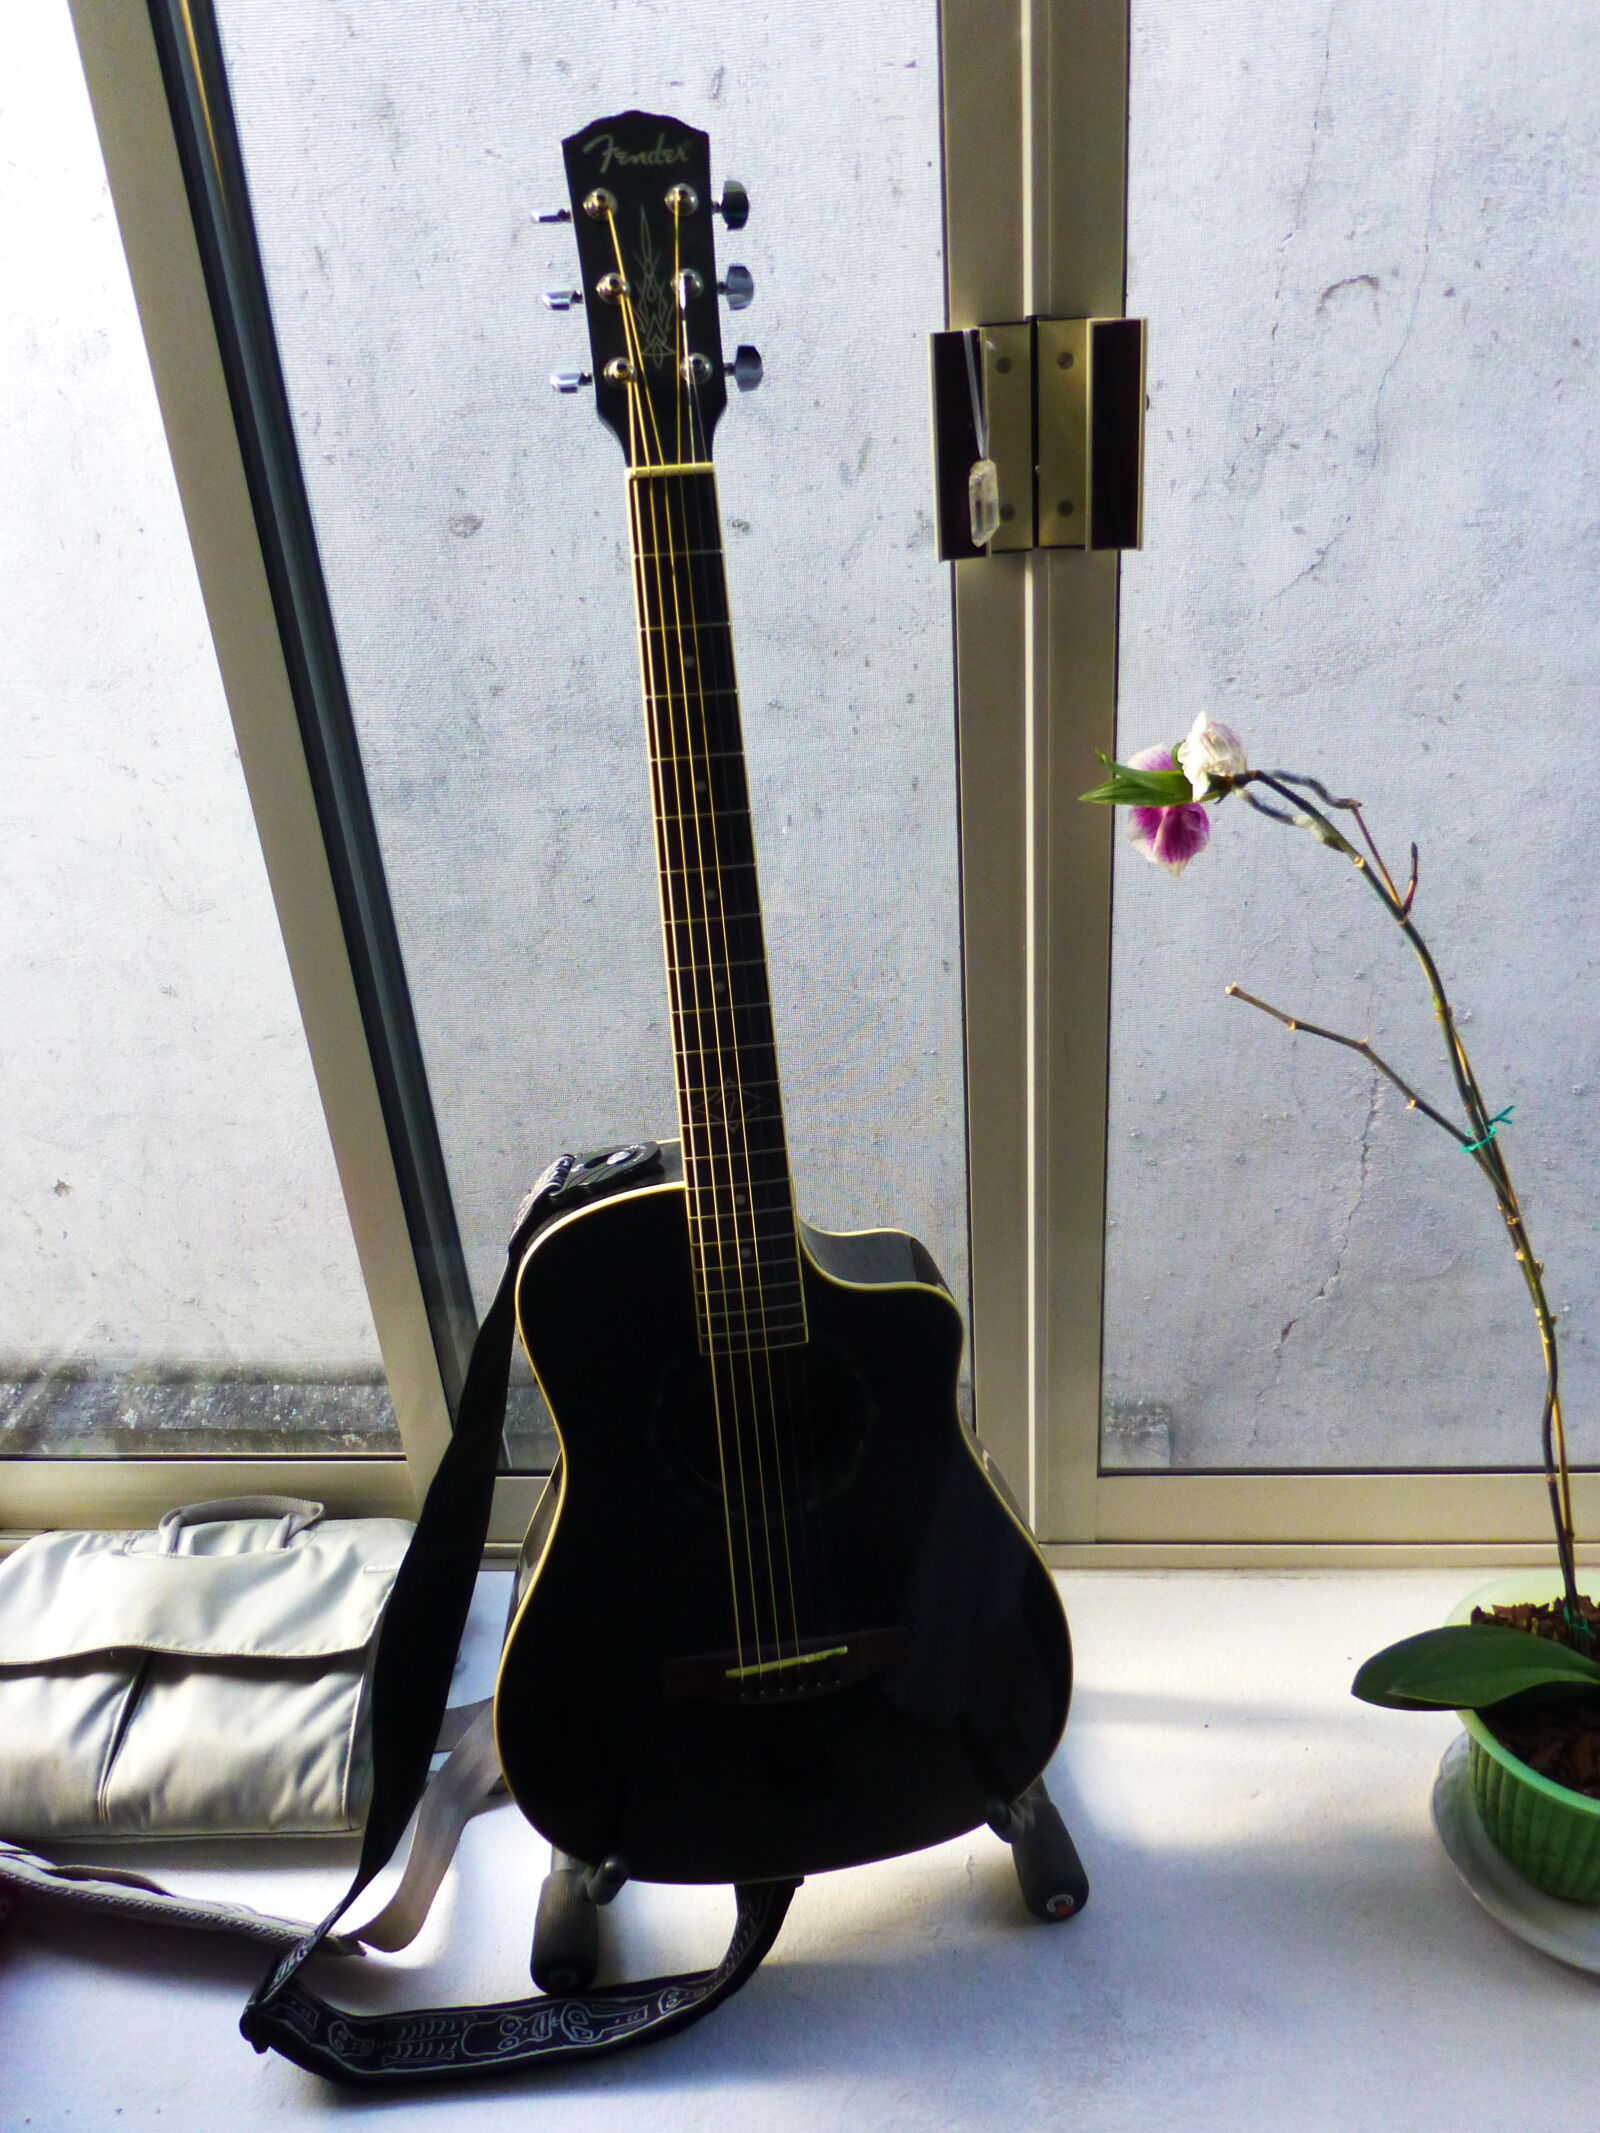 Panasonic Lumix DMC-ZS20 (Lumix DMC-TZ30) sample photo. Acoustic, guitar, black, guitar photography